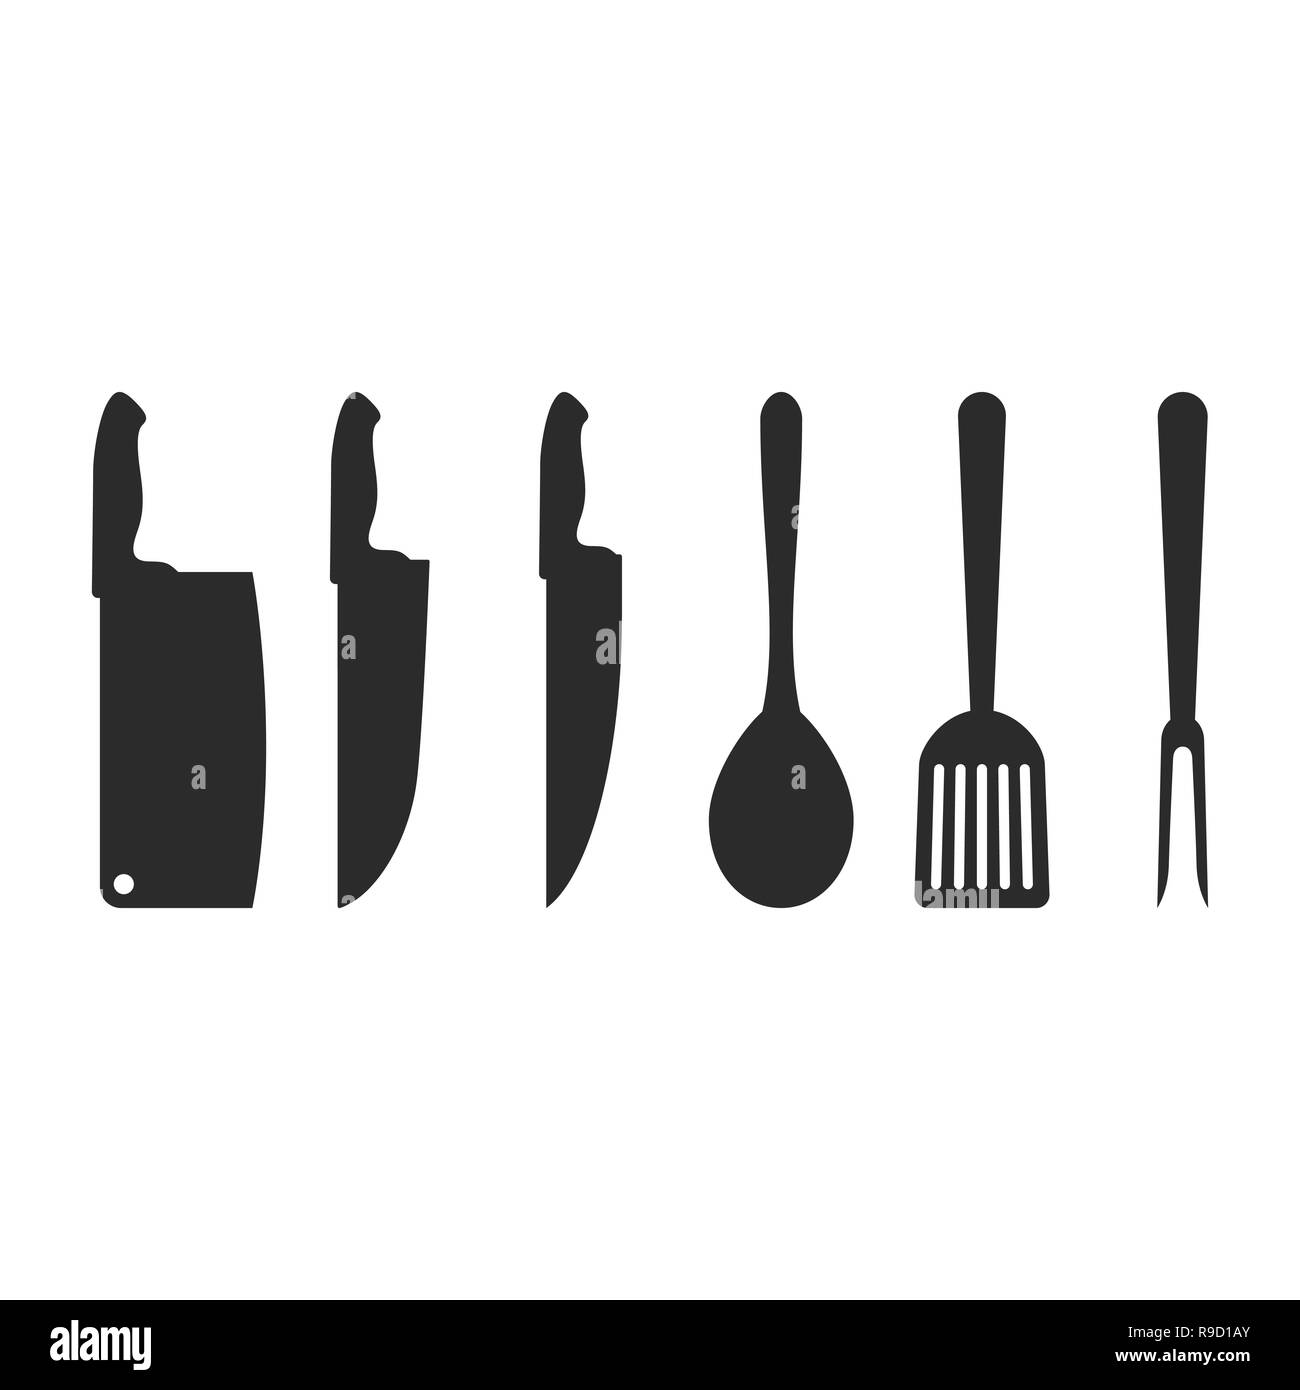 Küche Utensilien Werkzeug Ausstattung Innenausbau Schwarz Silhouette Stock  Abbildung - Illustration von ausrüstung, ikone: 216504618